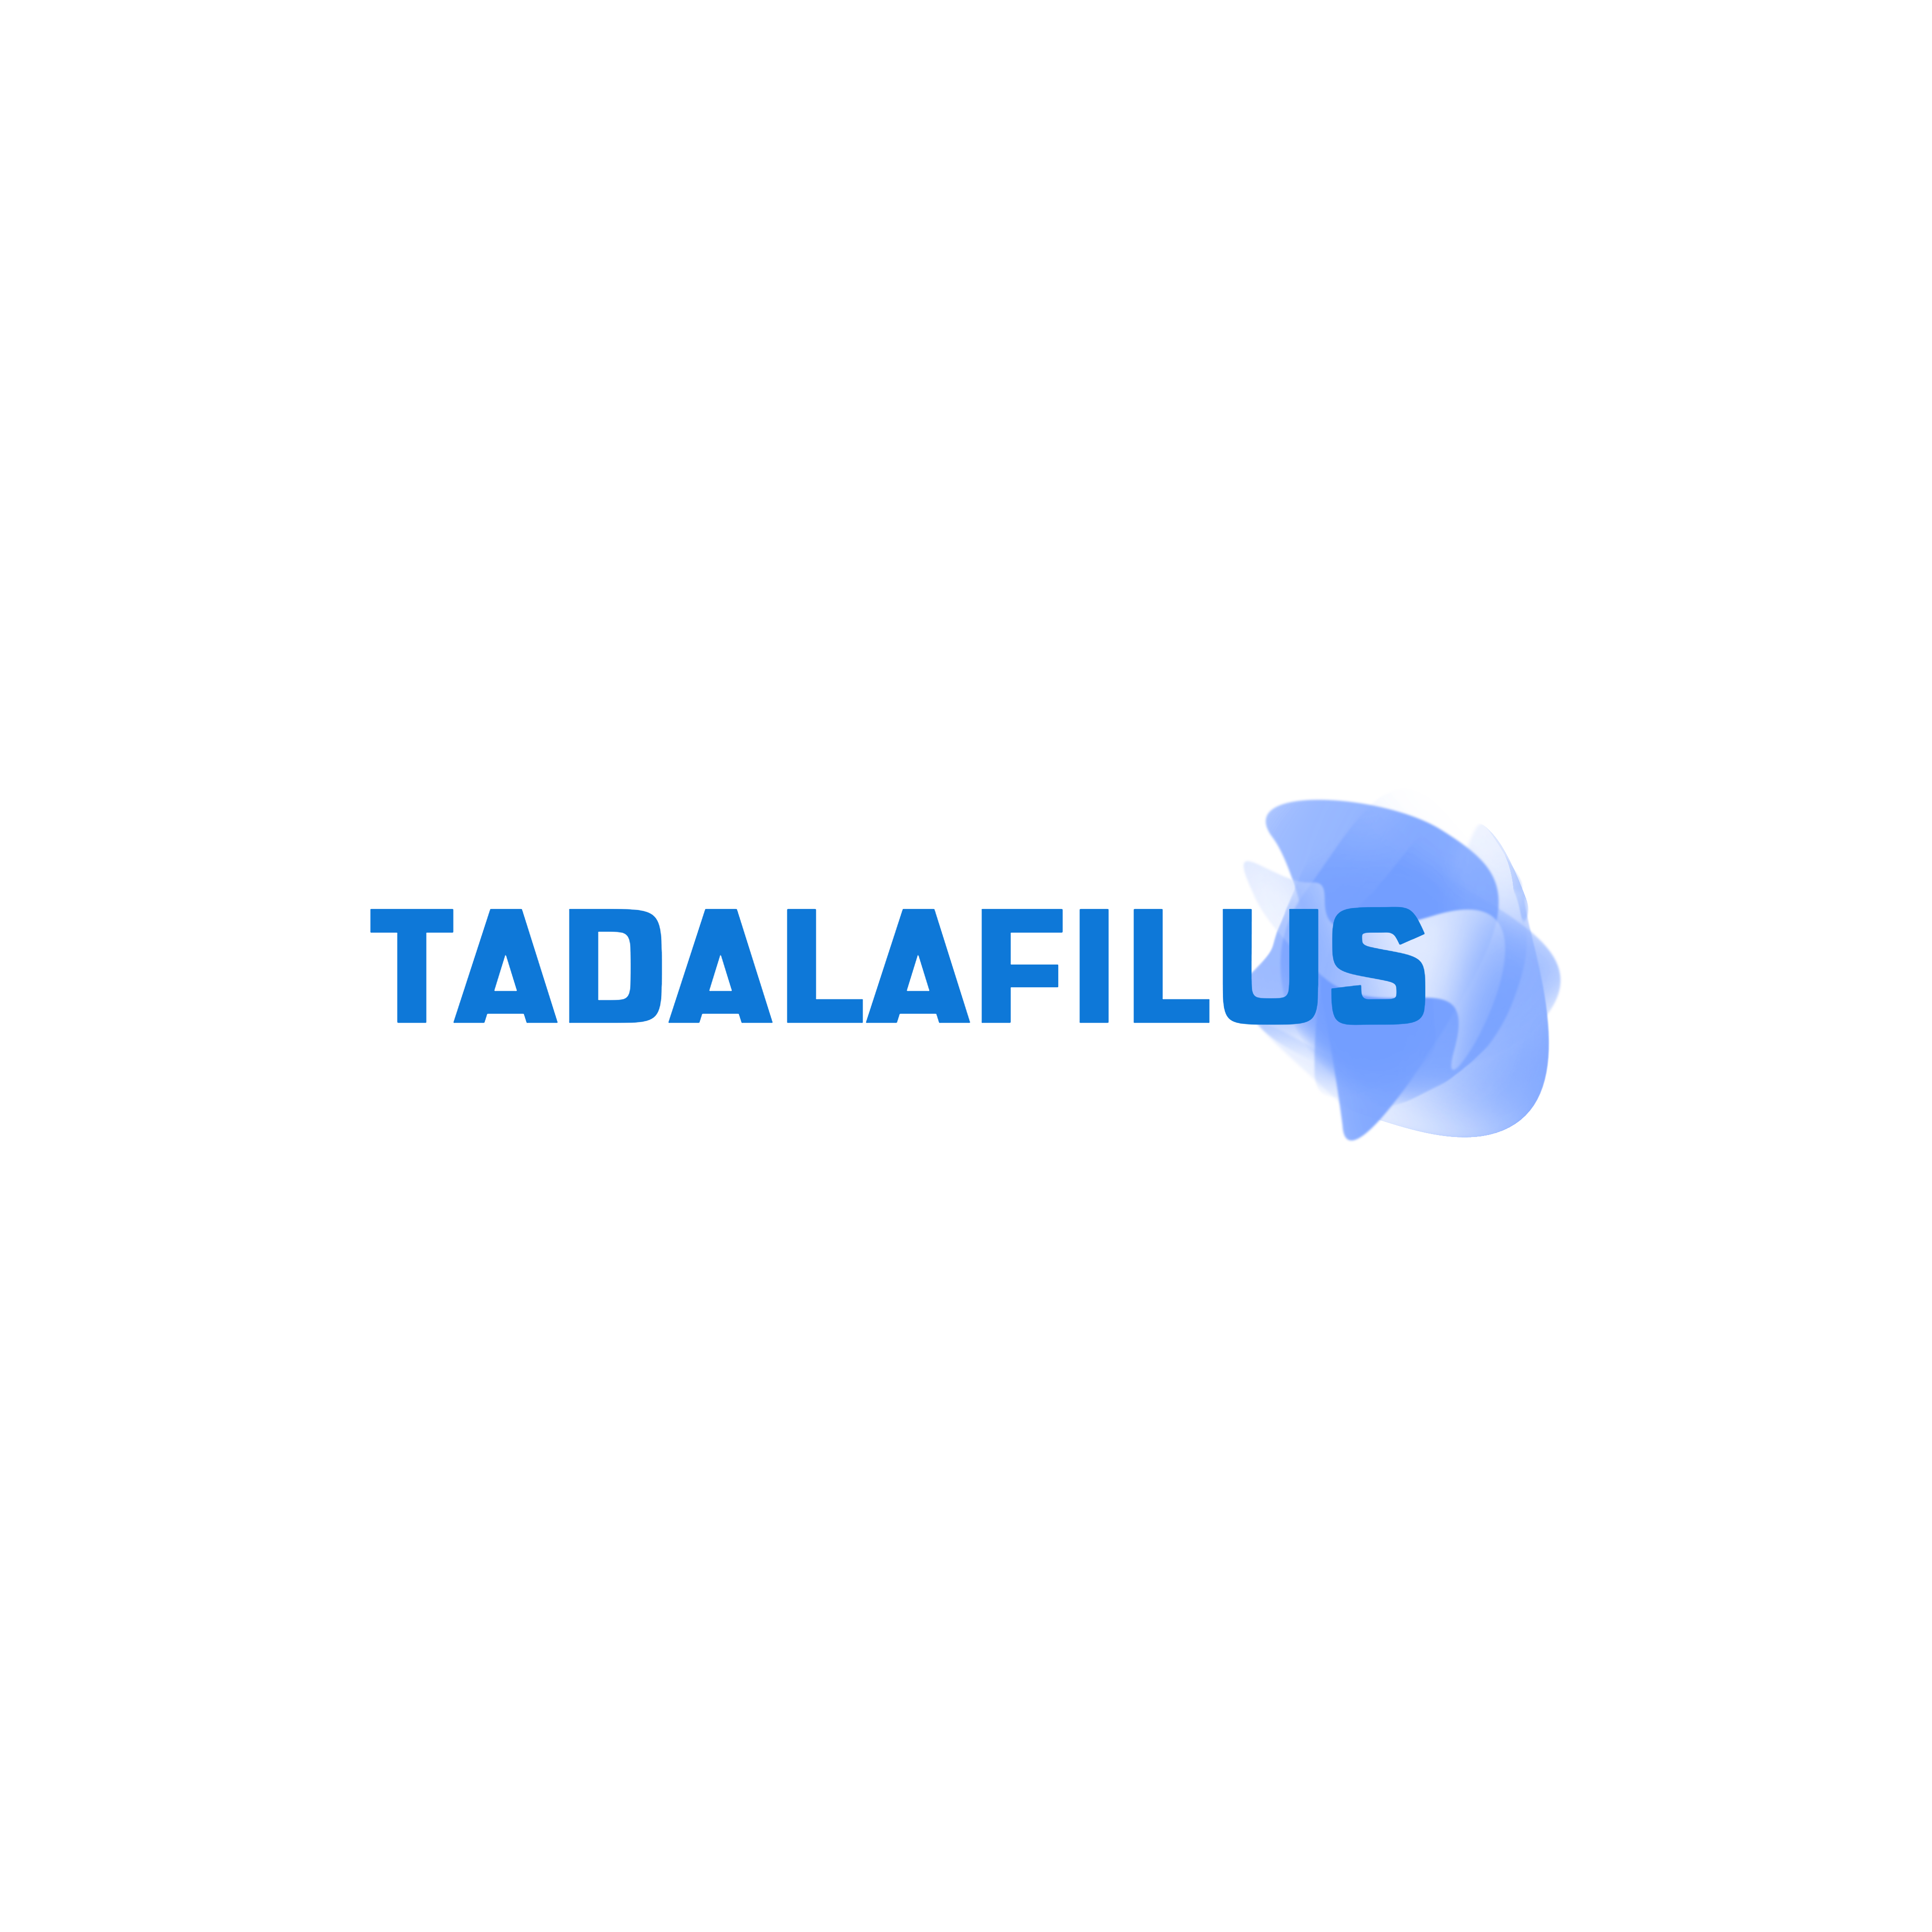 Hubungi Tadalafilus